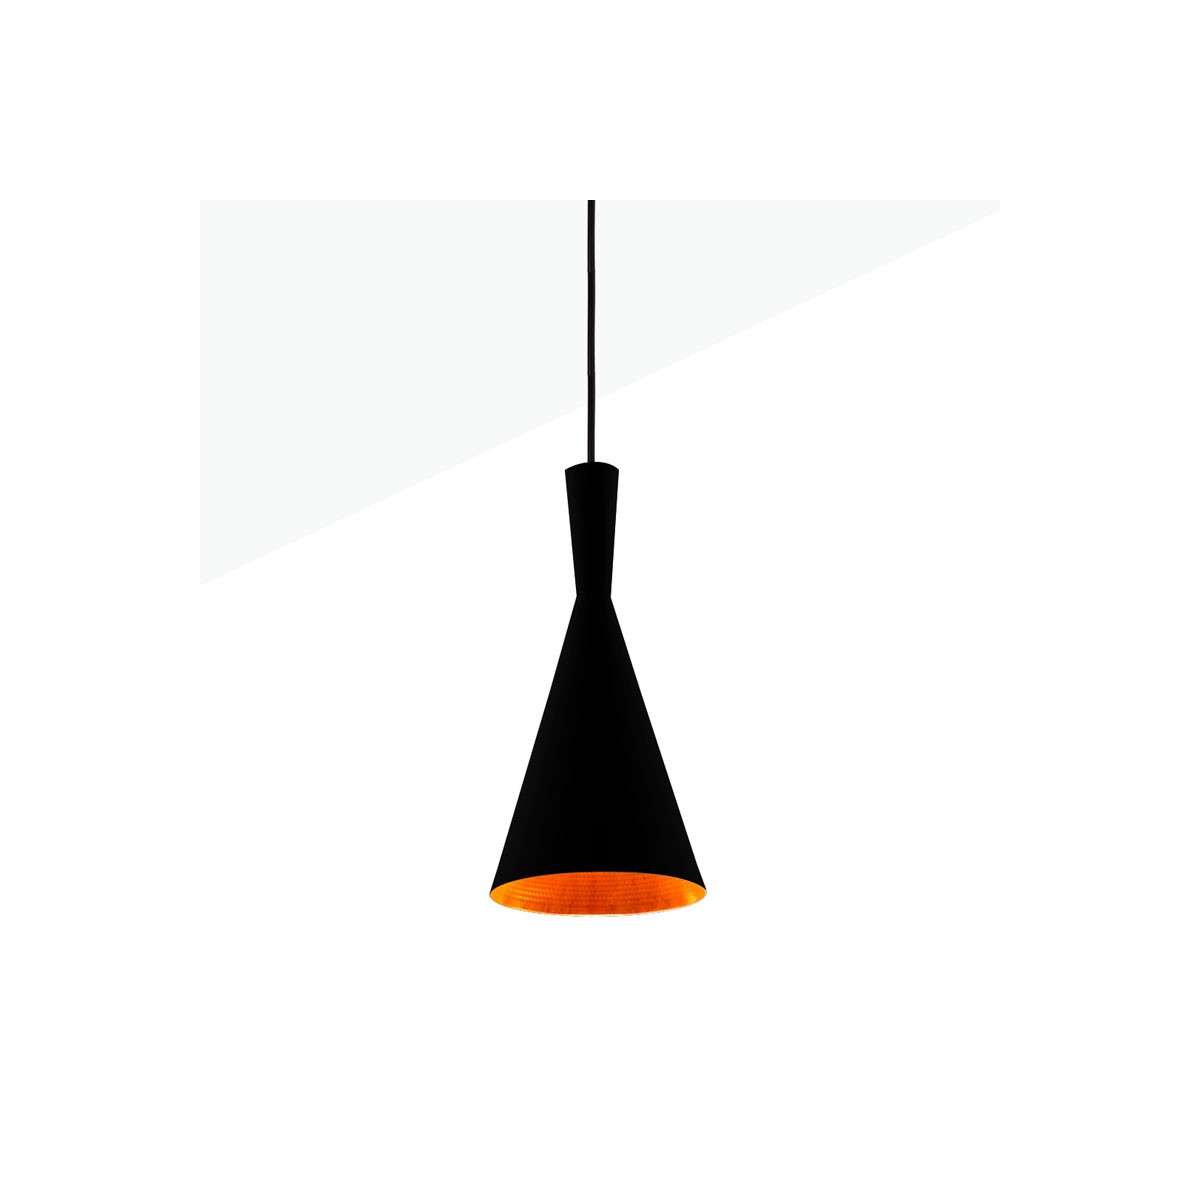 Nordic pendant lamp "SOLVANG".